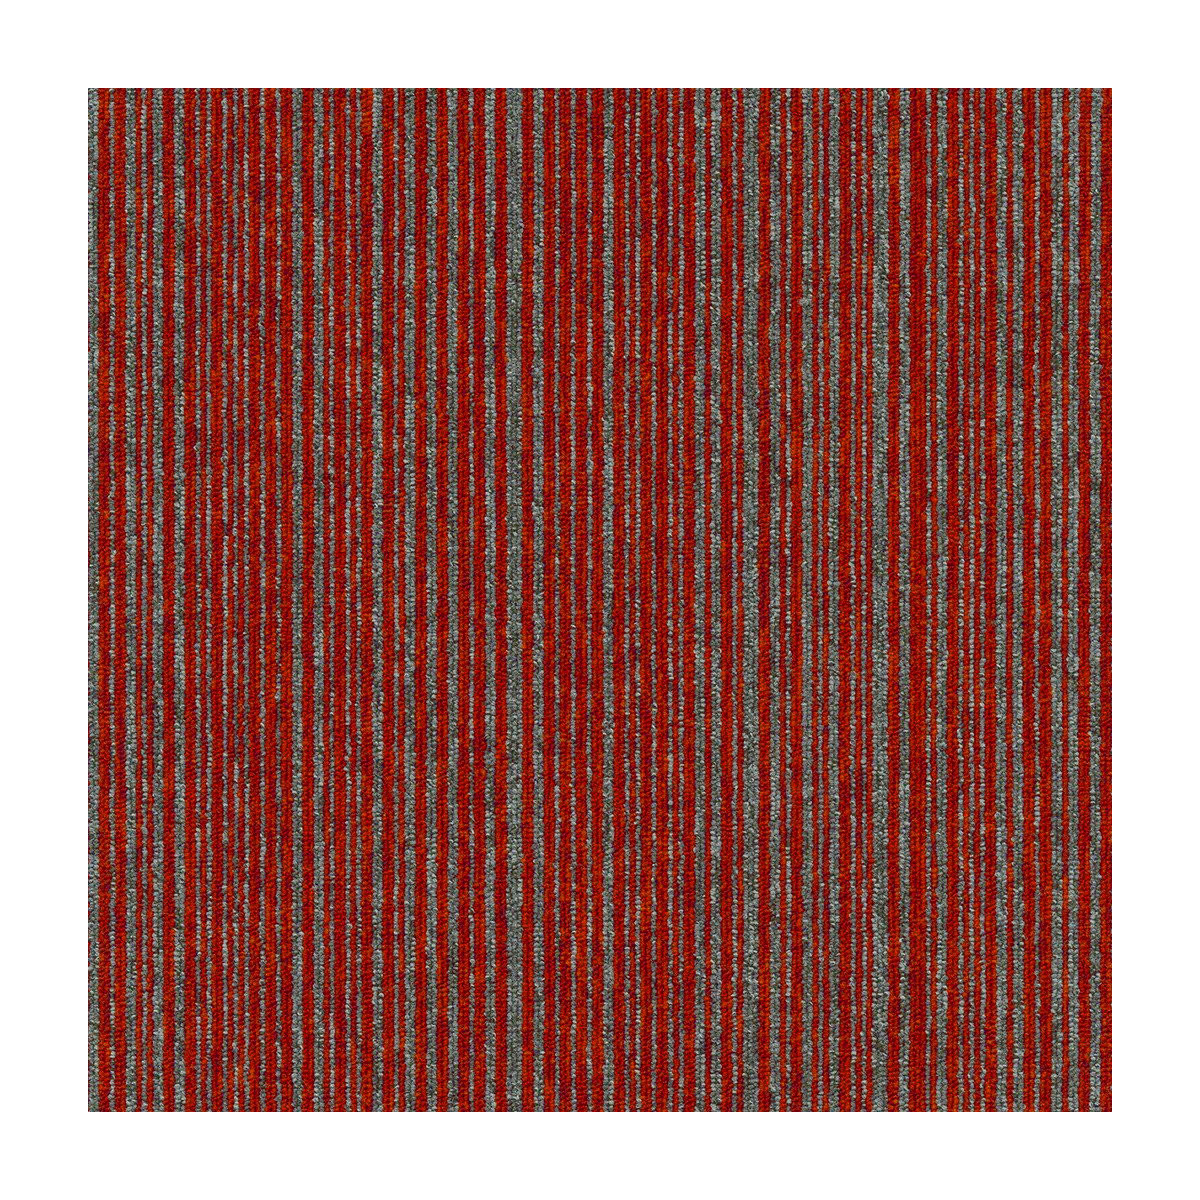 Kobercový štvorec Coral Lines 60380-50 červeno-šedý